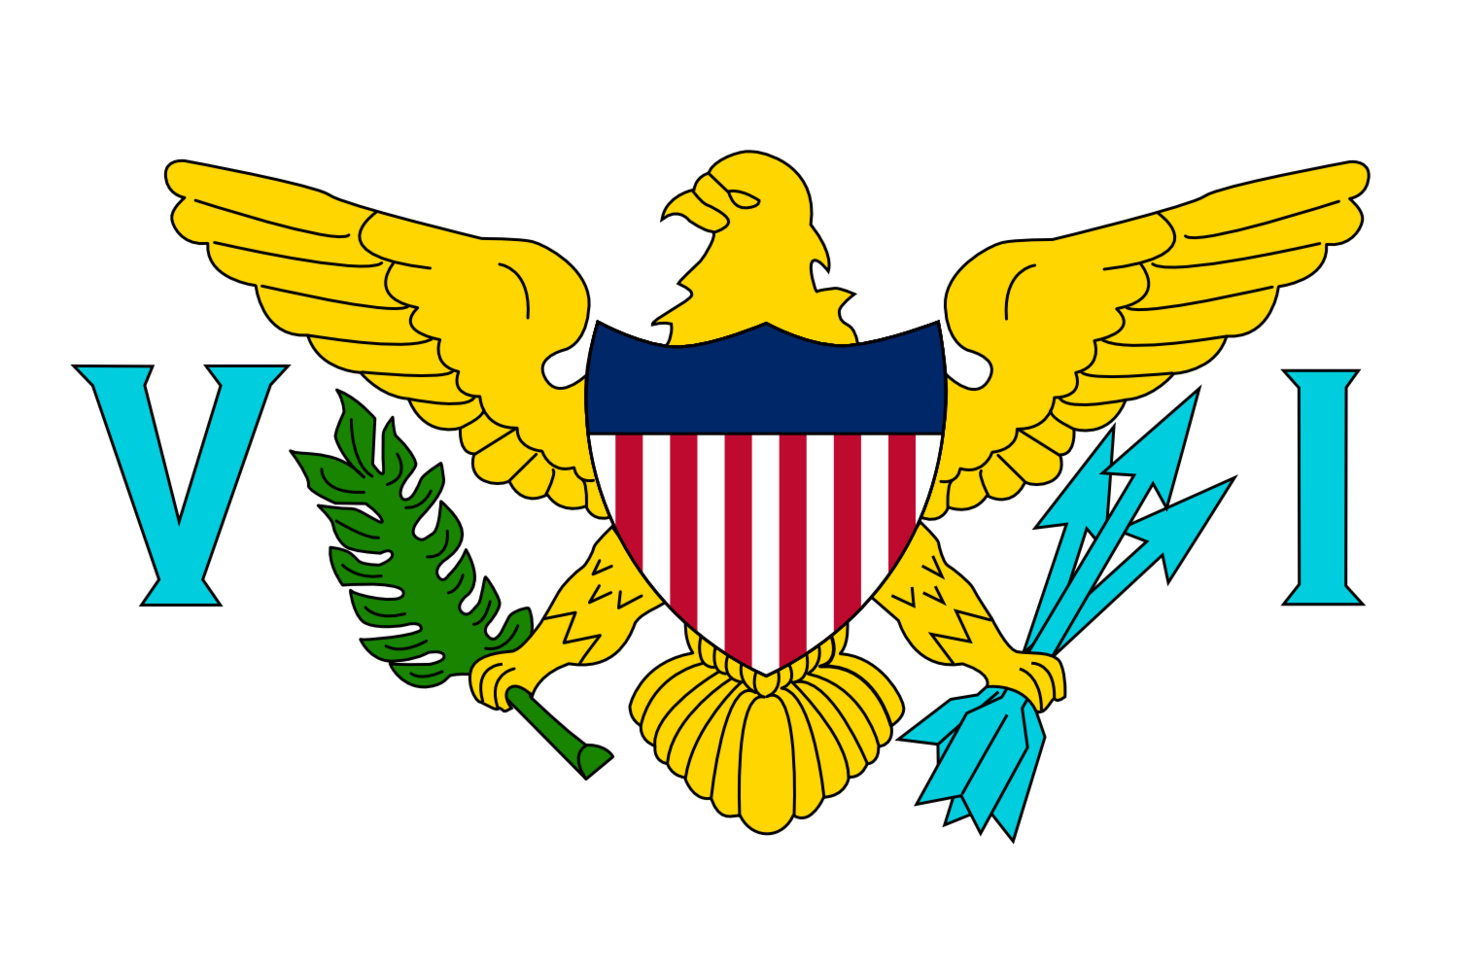 美屬維京群島旗幟